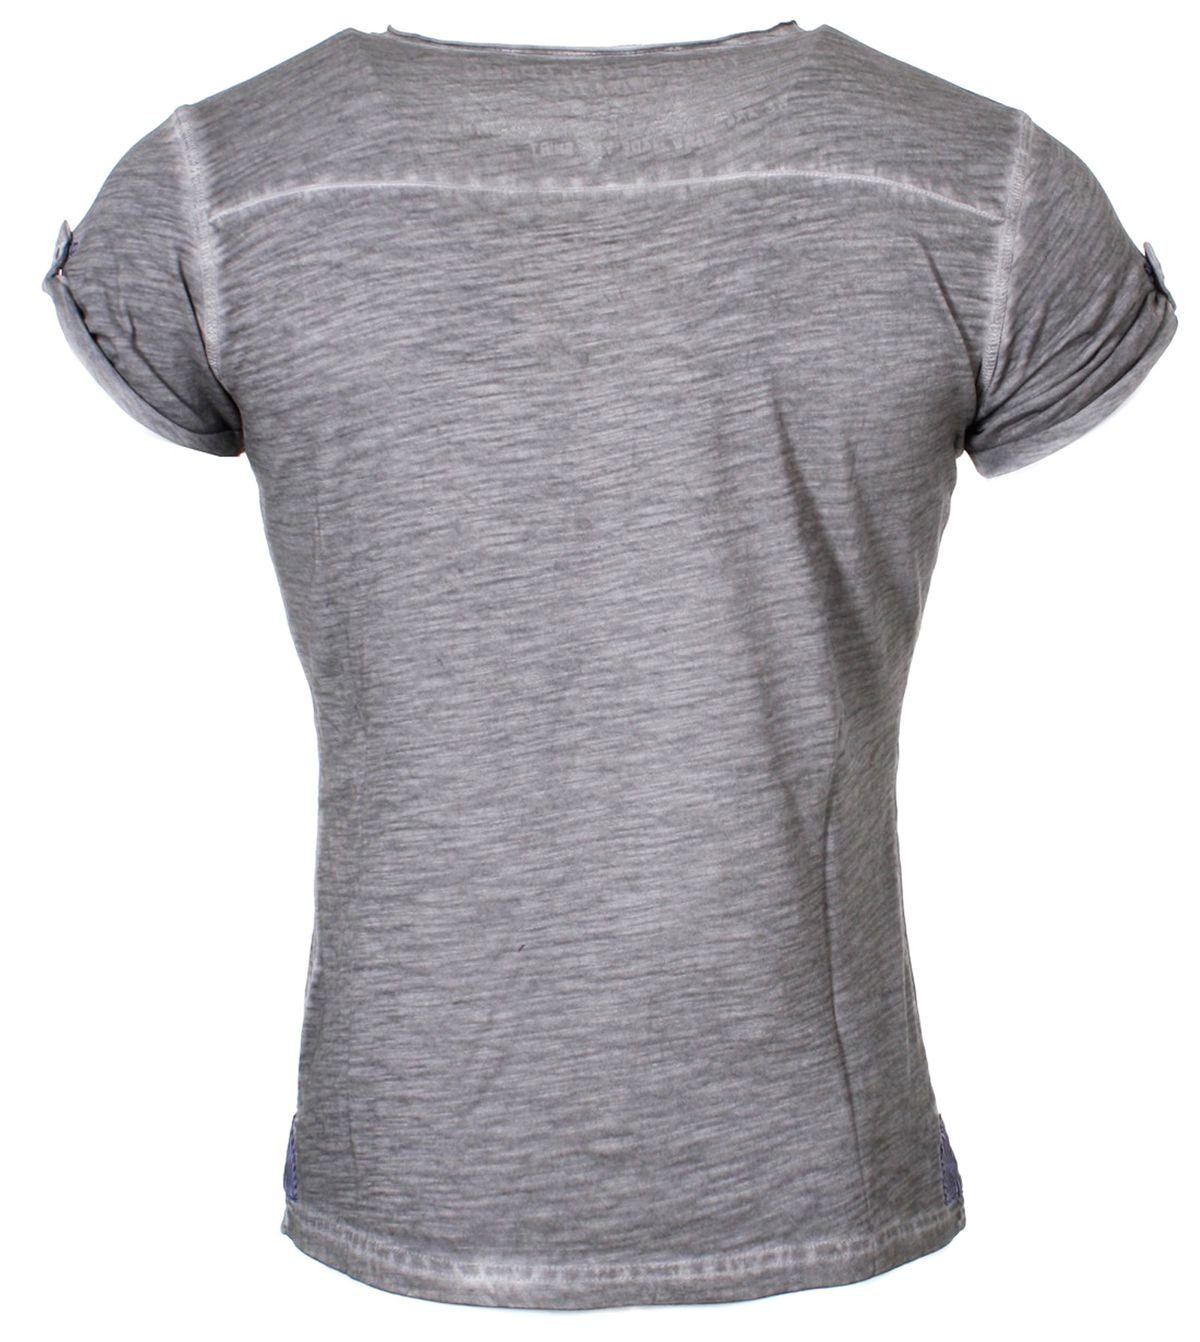 Largo T-Shirt Key kurzarm unifarben für Grau slim vintage Look Herren fit MT00023 mit Knopfleiste Arena button